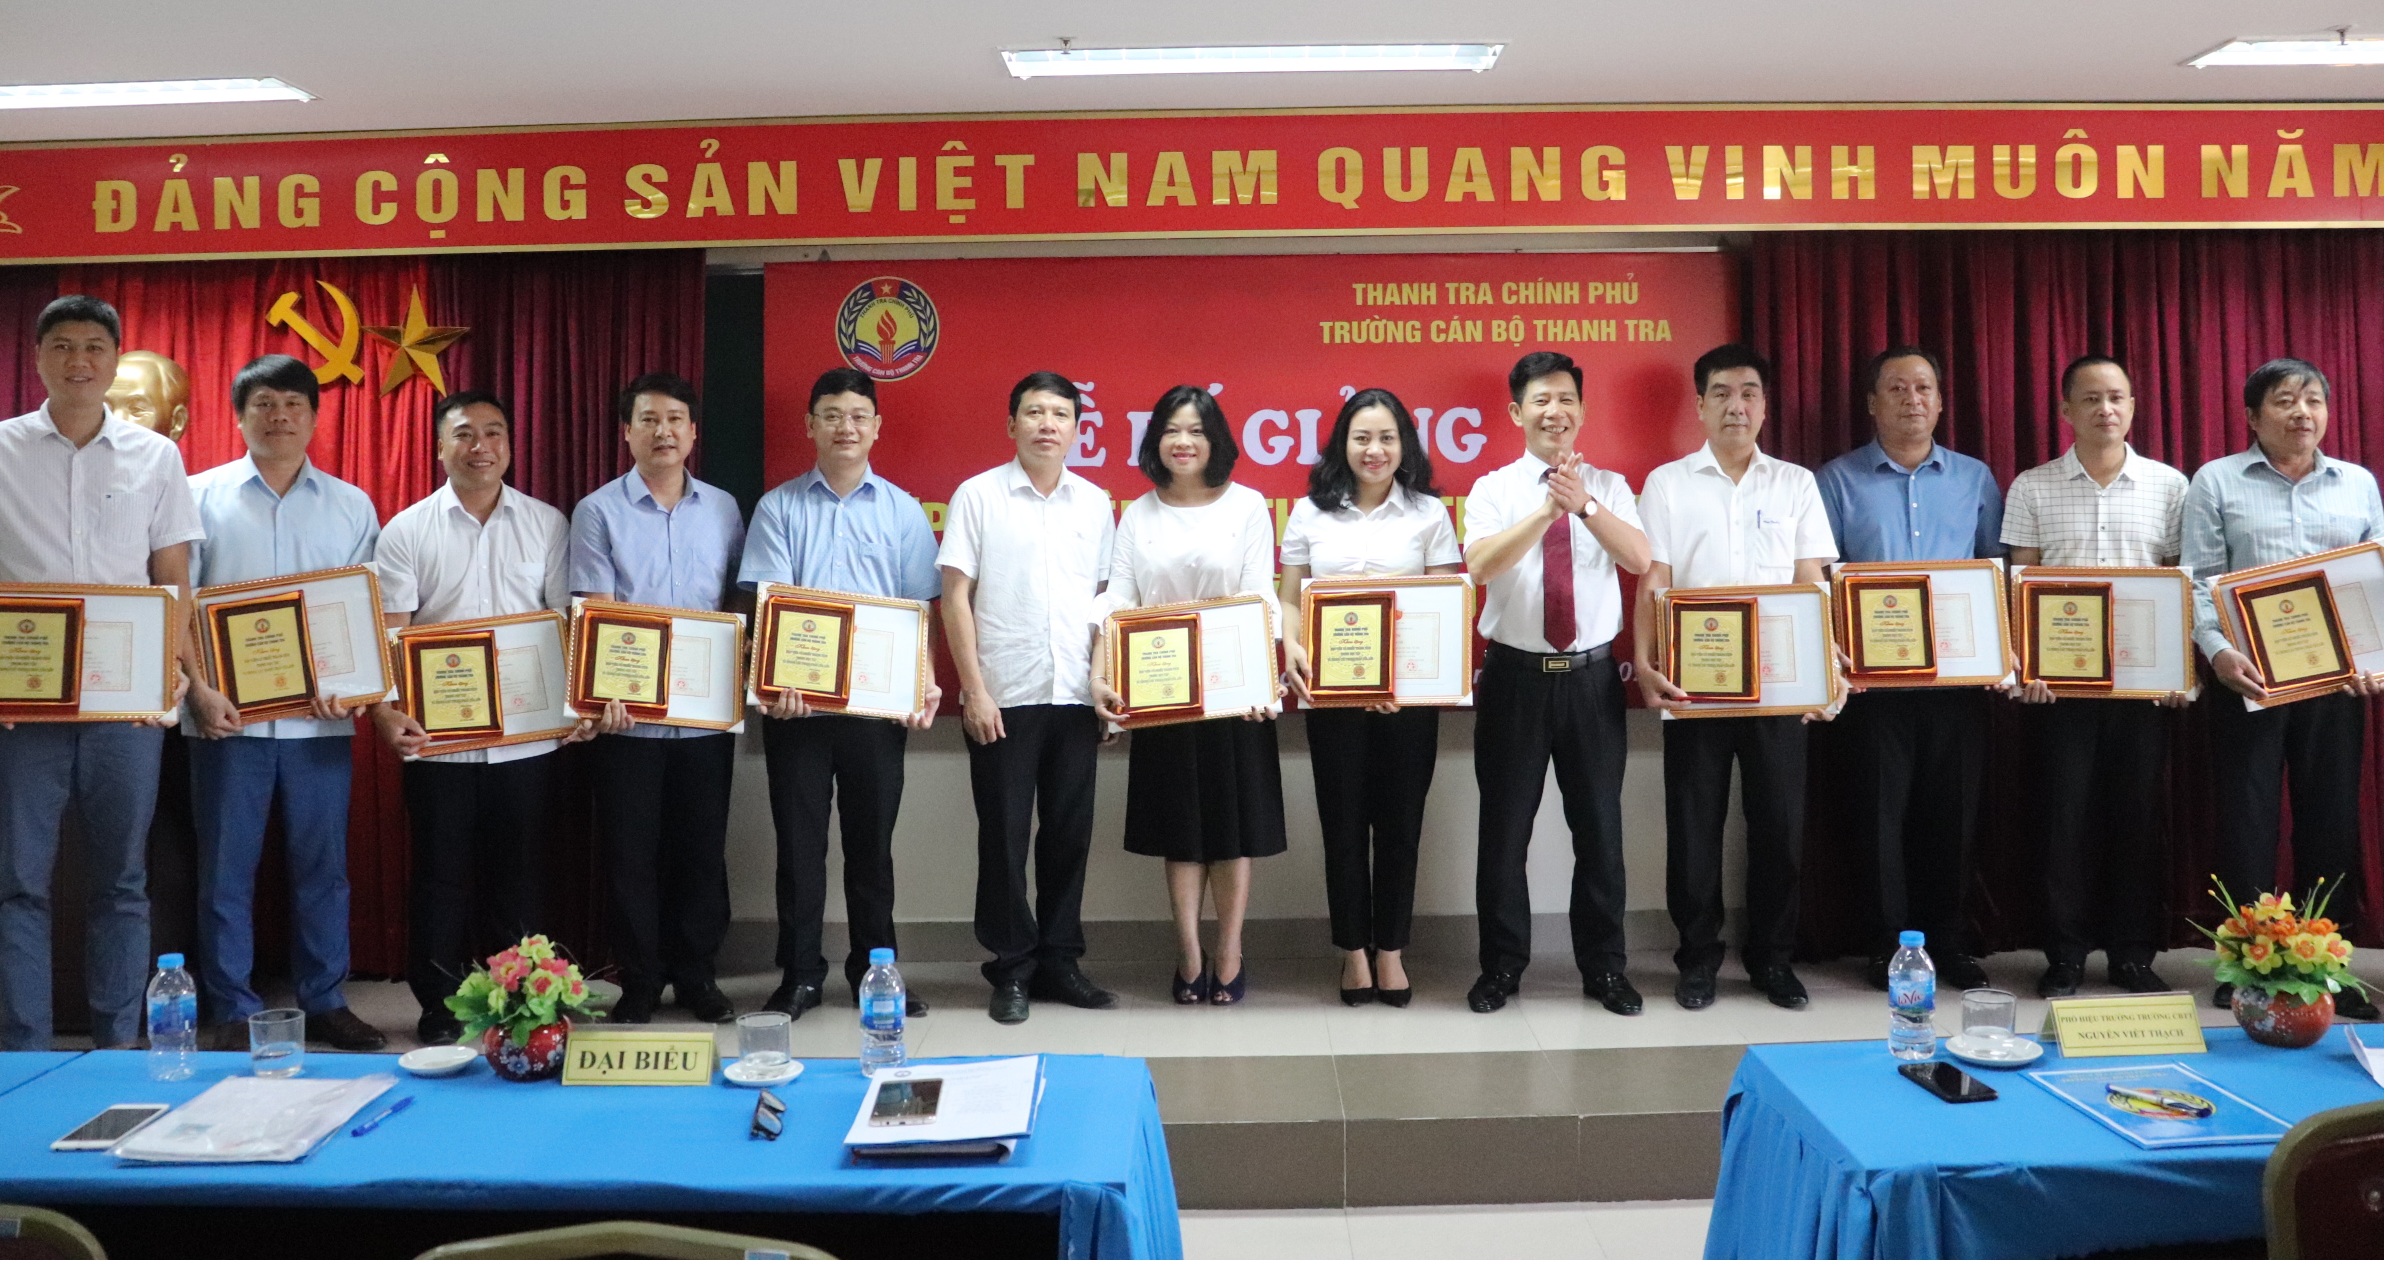 Ông Nguyễn Viết Thạch TTVCC Phó Hiệu trưởng nhà trường trao giấy khen cho học viên